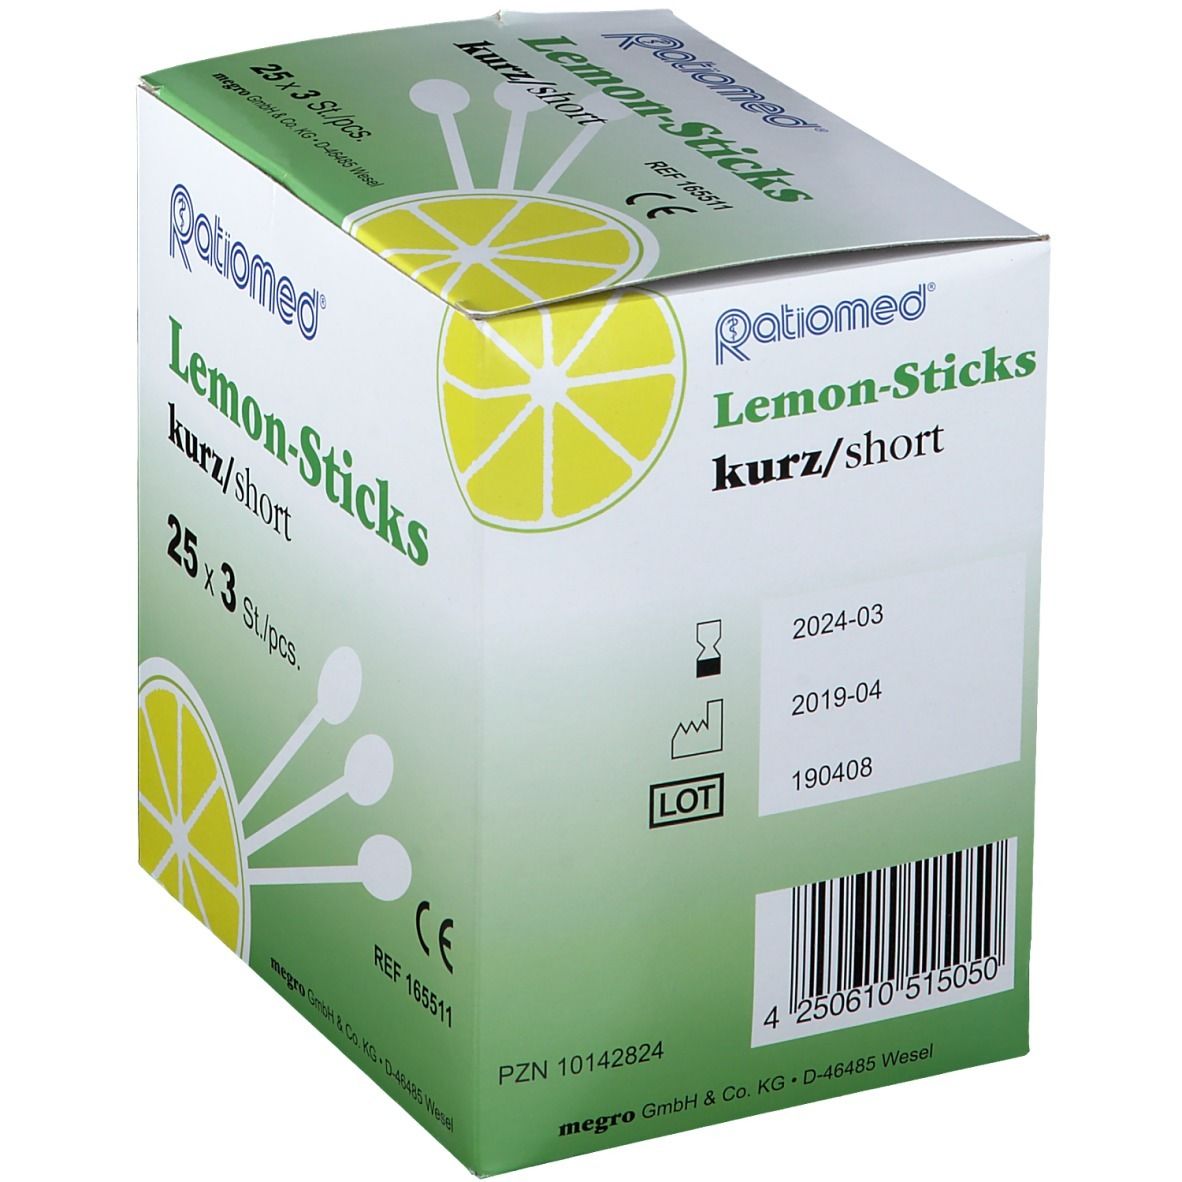 Lemon-Sticks kurz